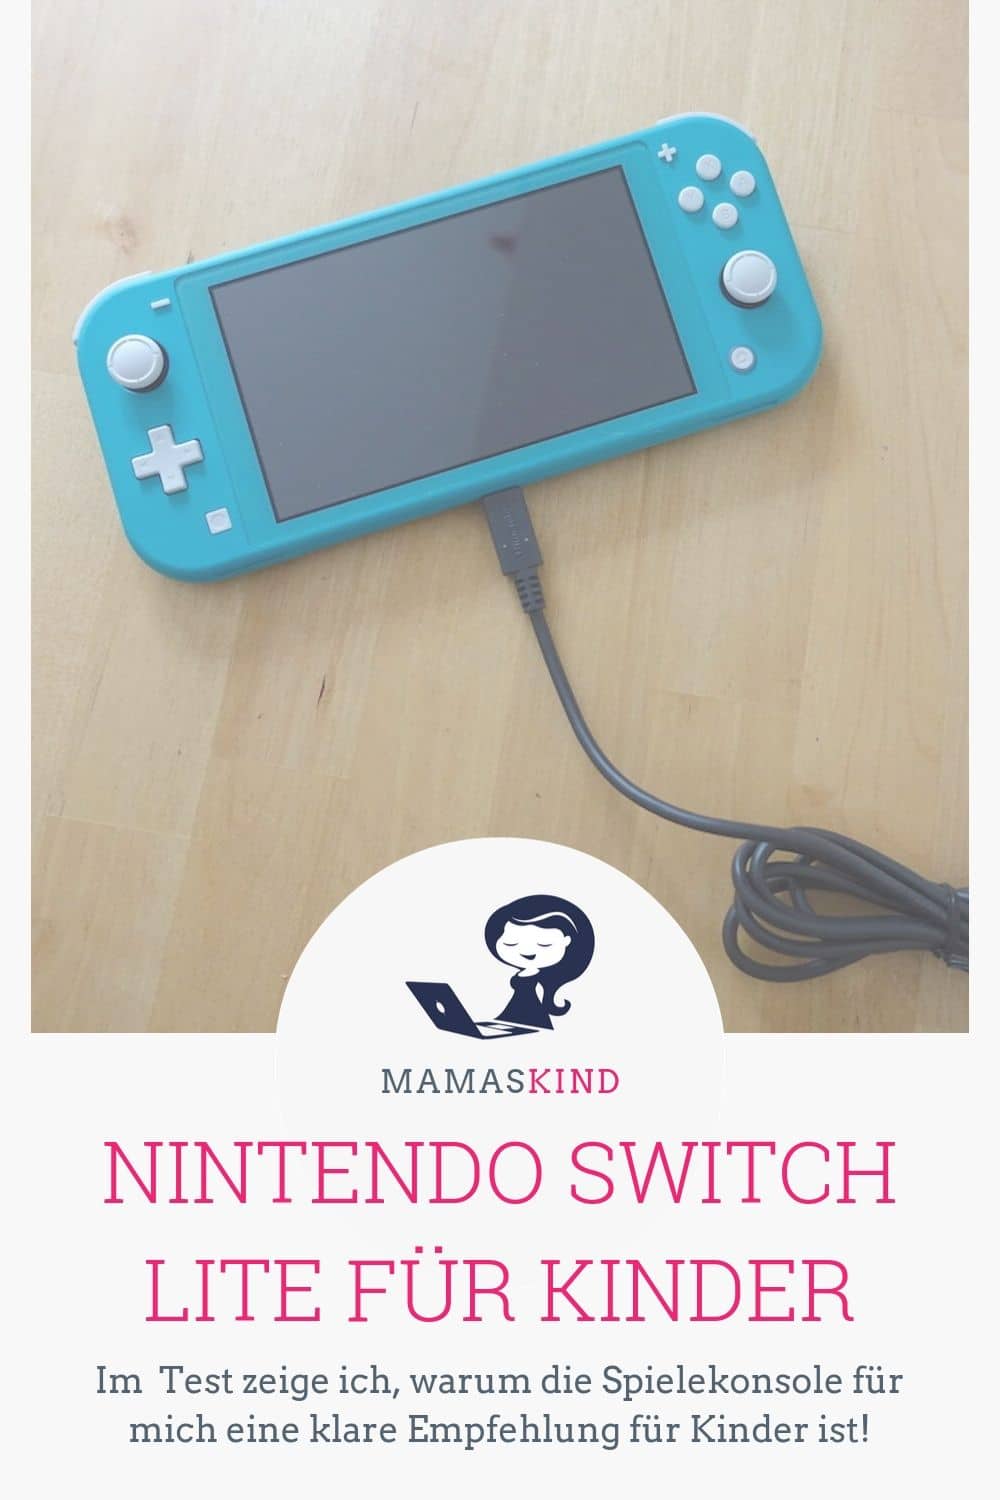 Nintendo Switch Lite ist eine klare Empfehlung für Kinder, die gerne zocken! - Mehr Infos zum Test auf Mamaskind.de